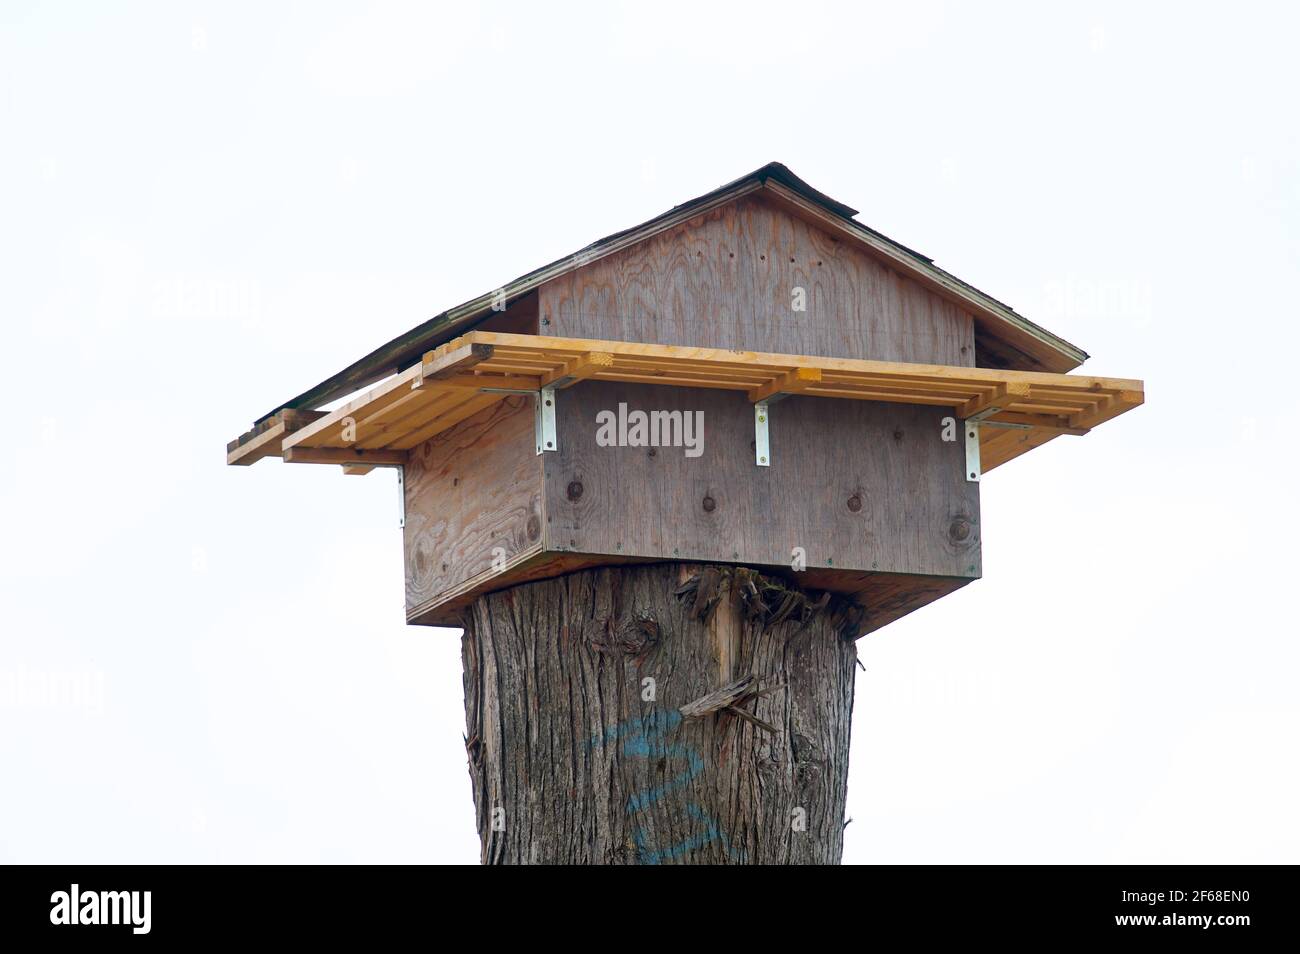 Nistkasten für Scheuneneulen, gebaut aufgrund der abgerissenen alten Scheunen. Pitt Meadows, B. C., Kanada. Stock Foto. Stockfoto